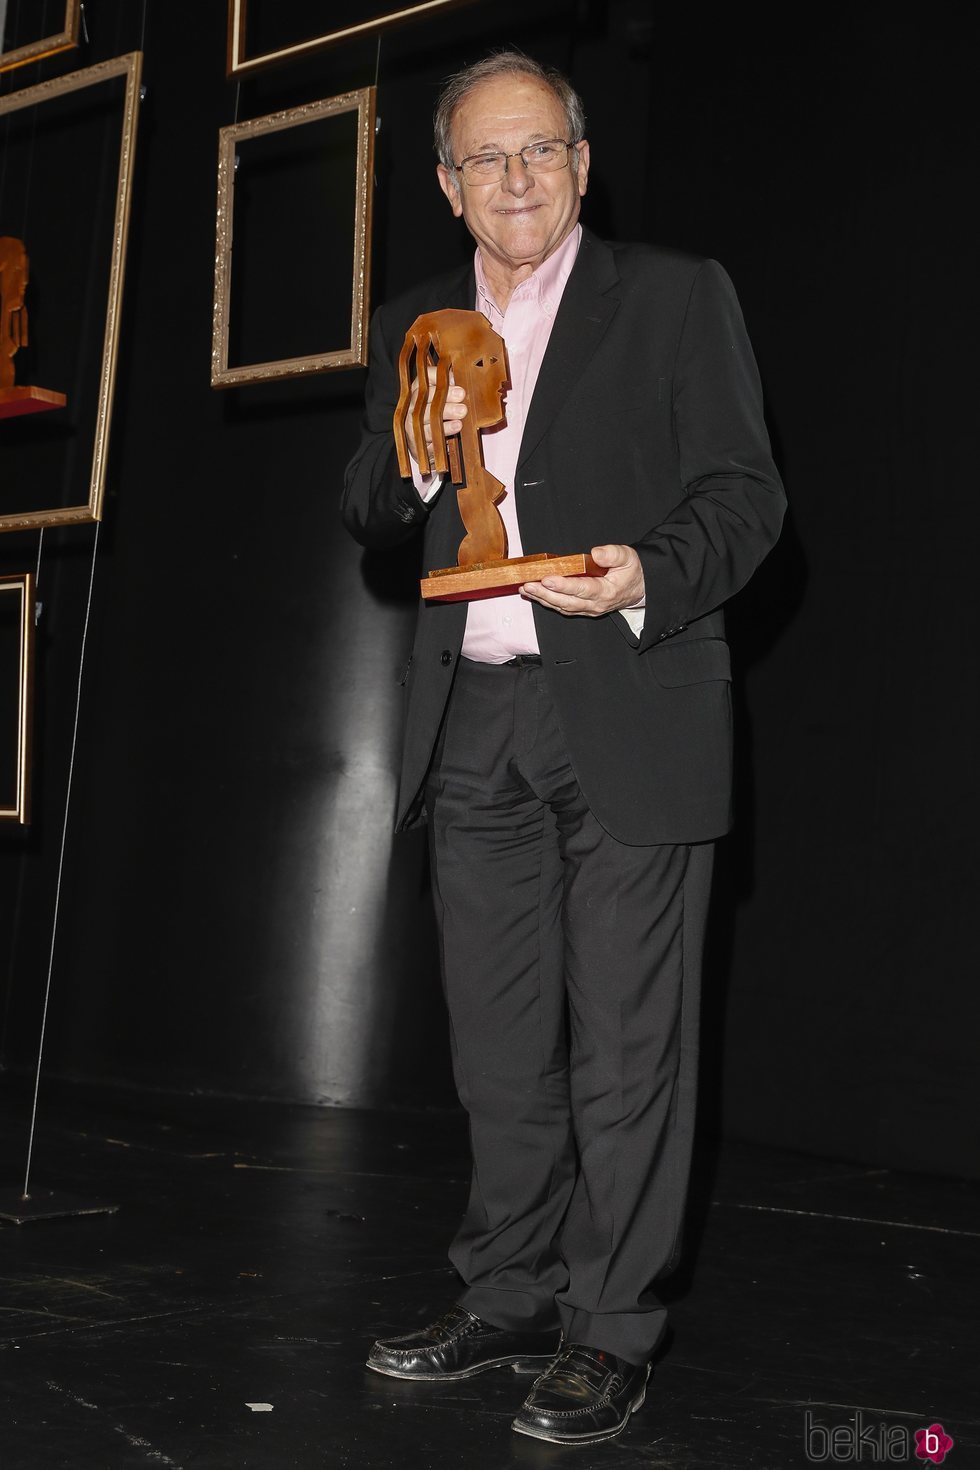 Emilio Gutiérrez Caba con su premios Fotograma de Plata 2018